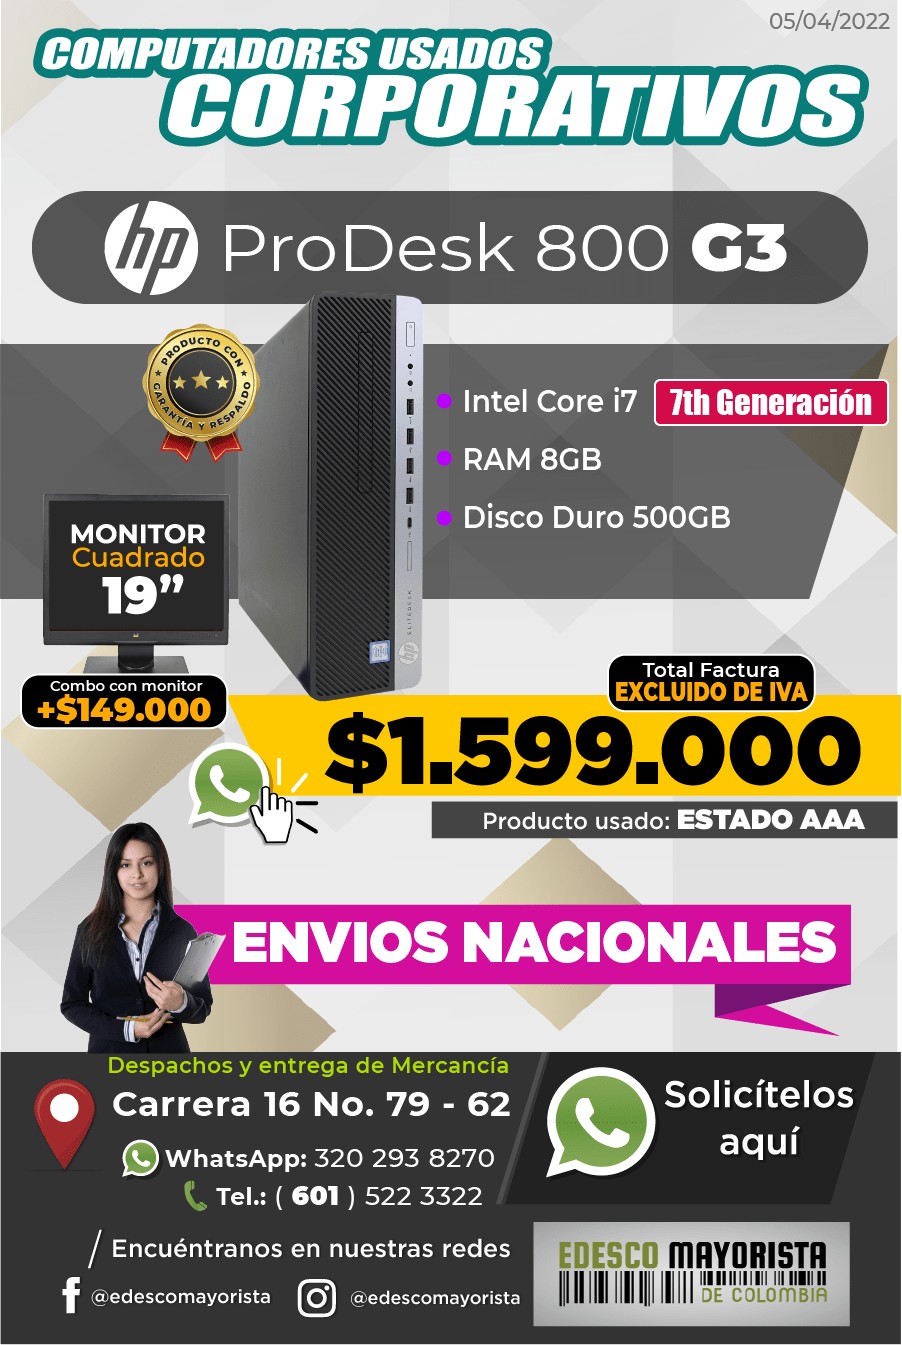 Torre HP ProDesk 800 G3